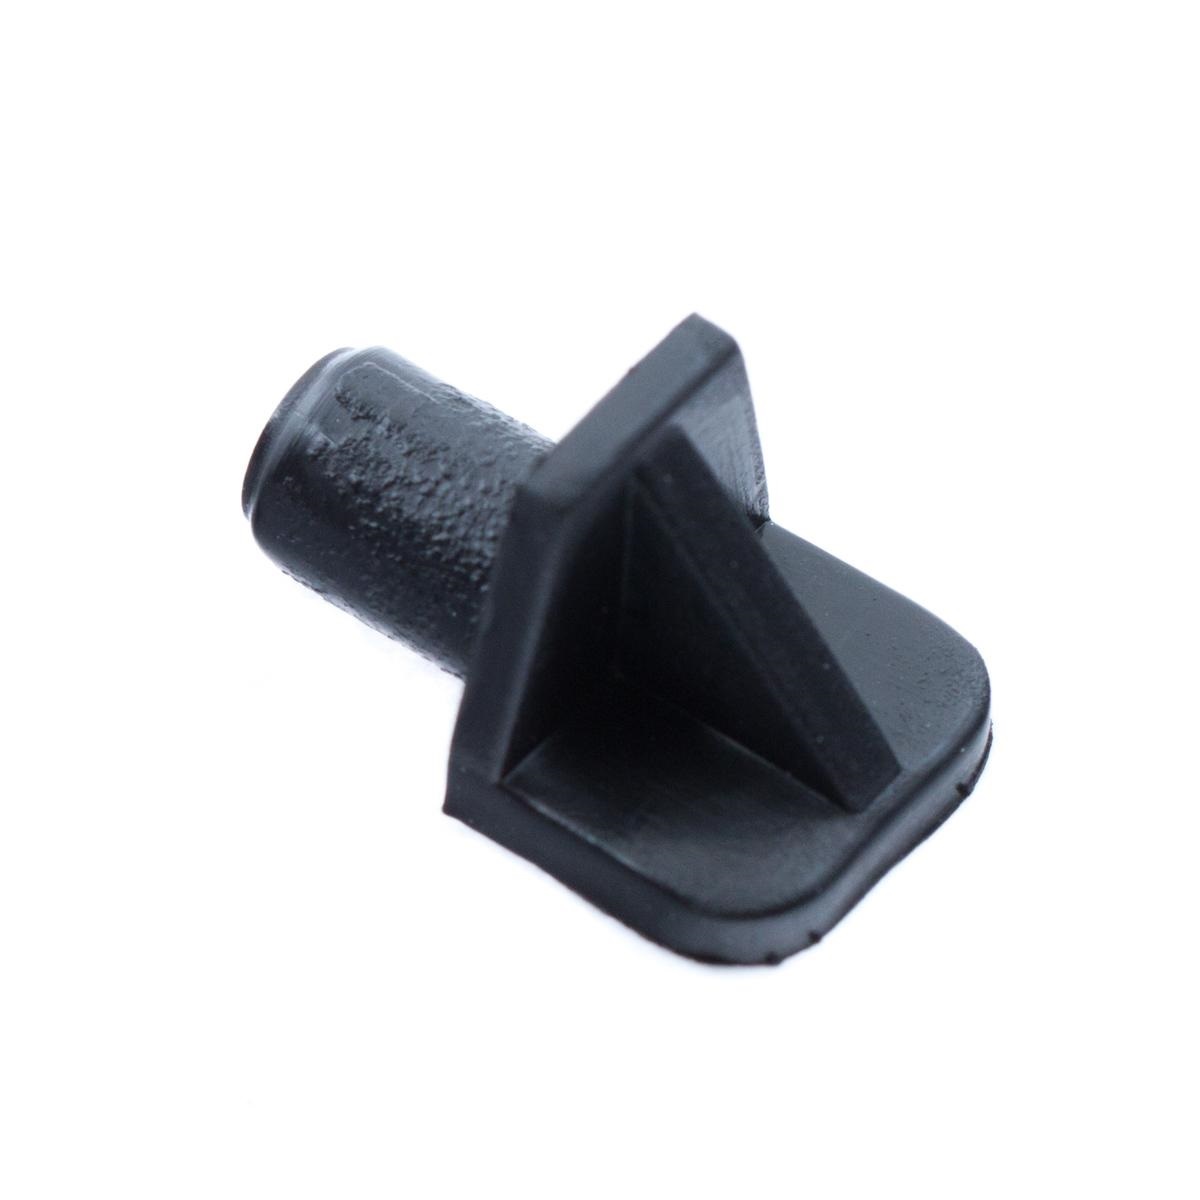 Полкодержатель пластмассовый d=6 мм черный (Пд) (029)